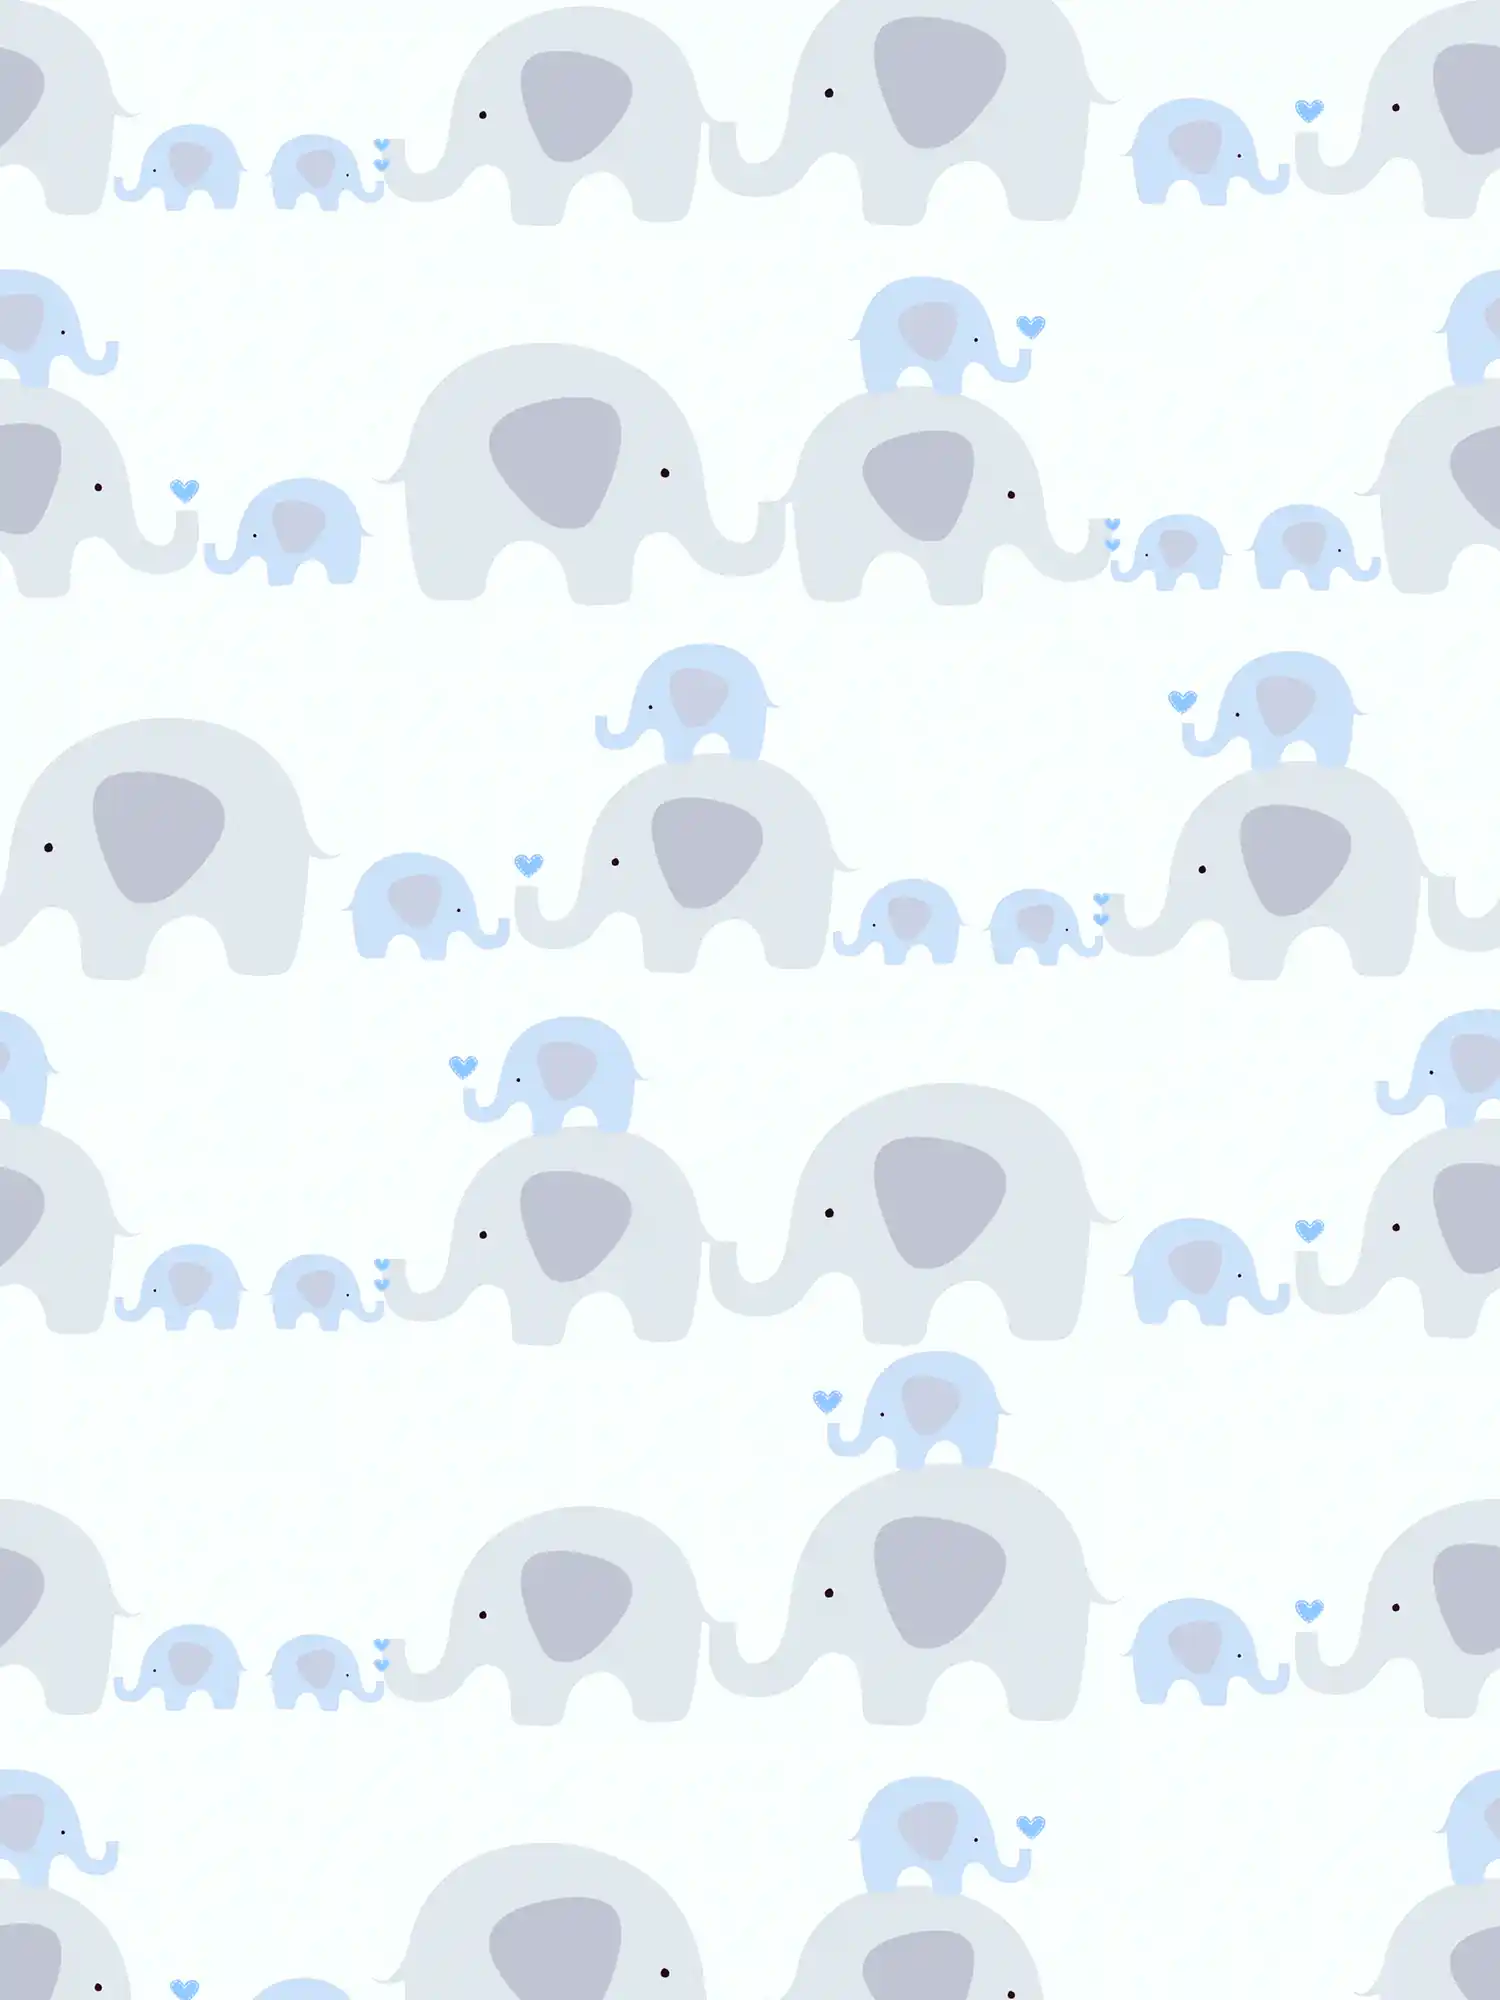 Papel pintado infantil niño elefantes - azul, gris, blanco
